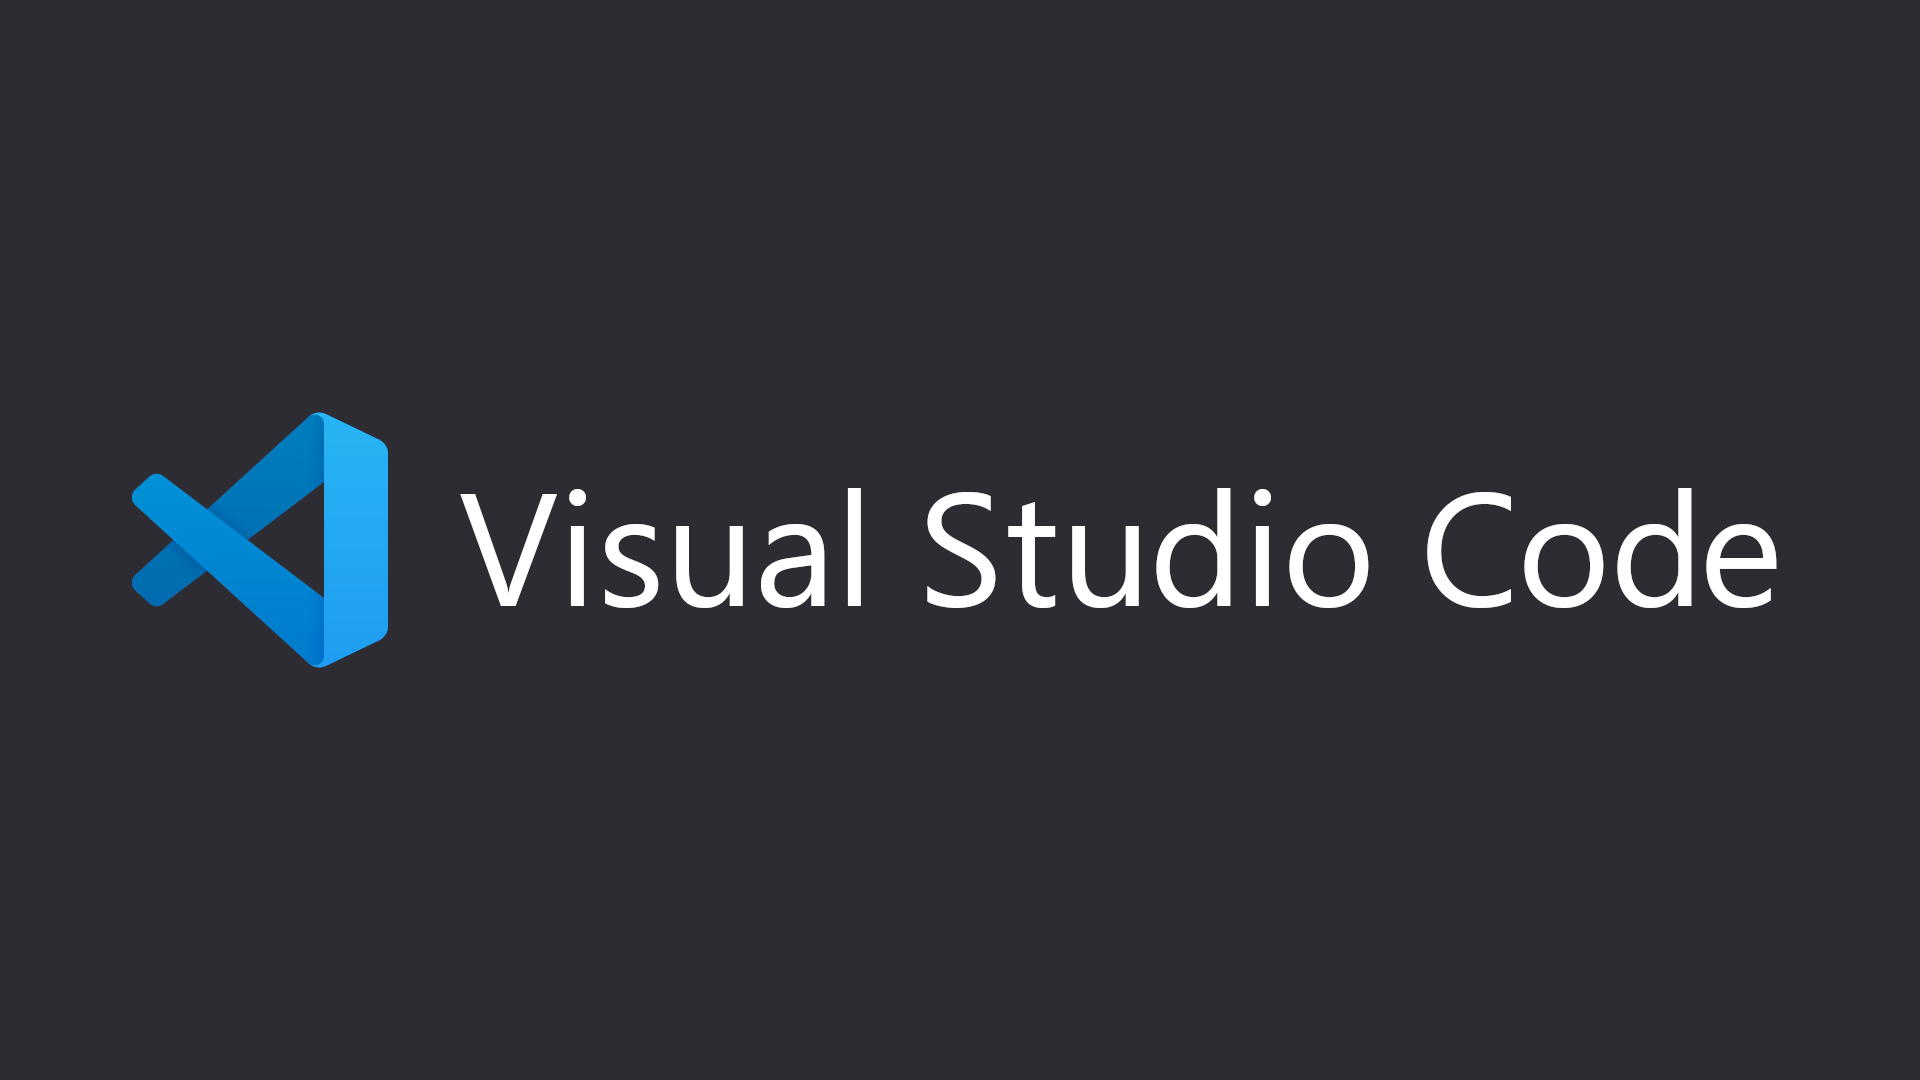 Visual Studio Code(VSCode)で新規タブを一番後ろで開くようにする